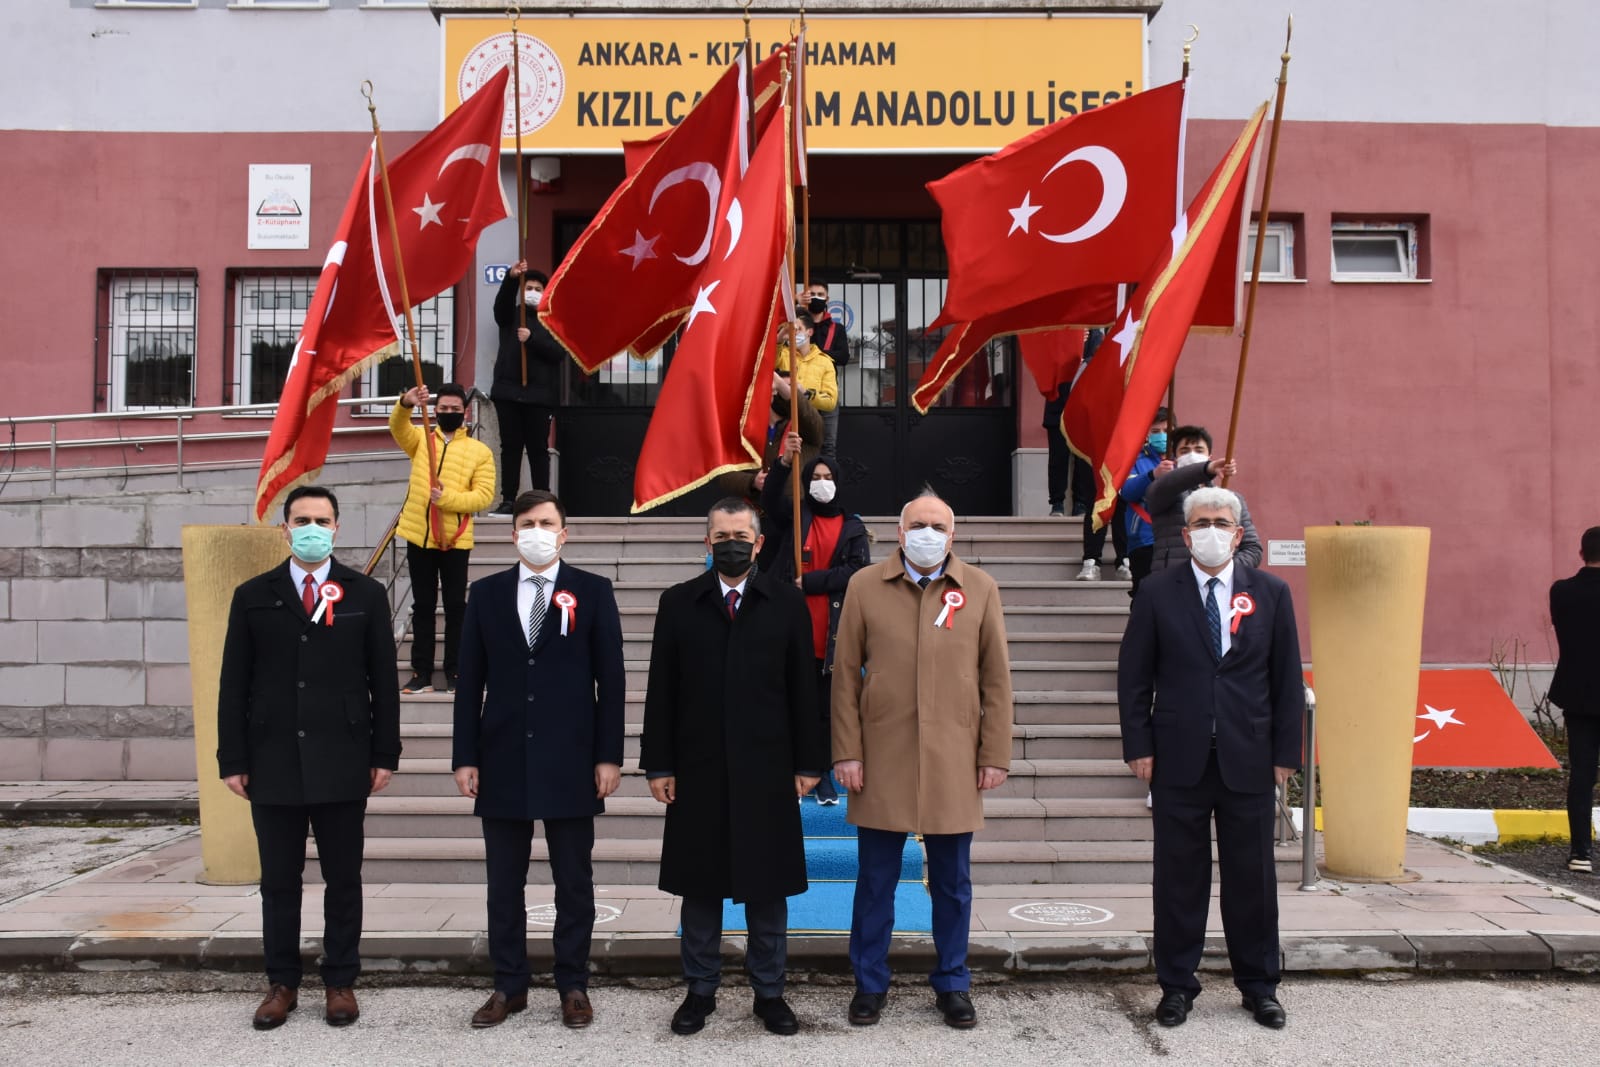 18 Mart Şehitler Günü’nde Kızılcahamam Anadolu Lisesi’nde çelenk koyma töreni yapıldı.